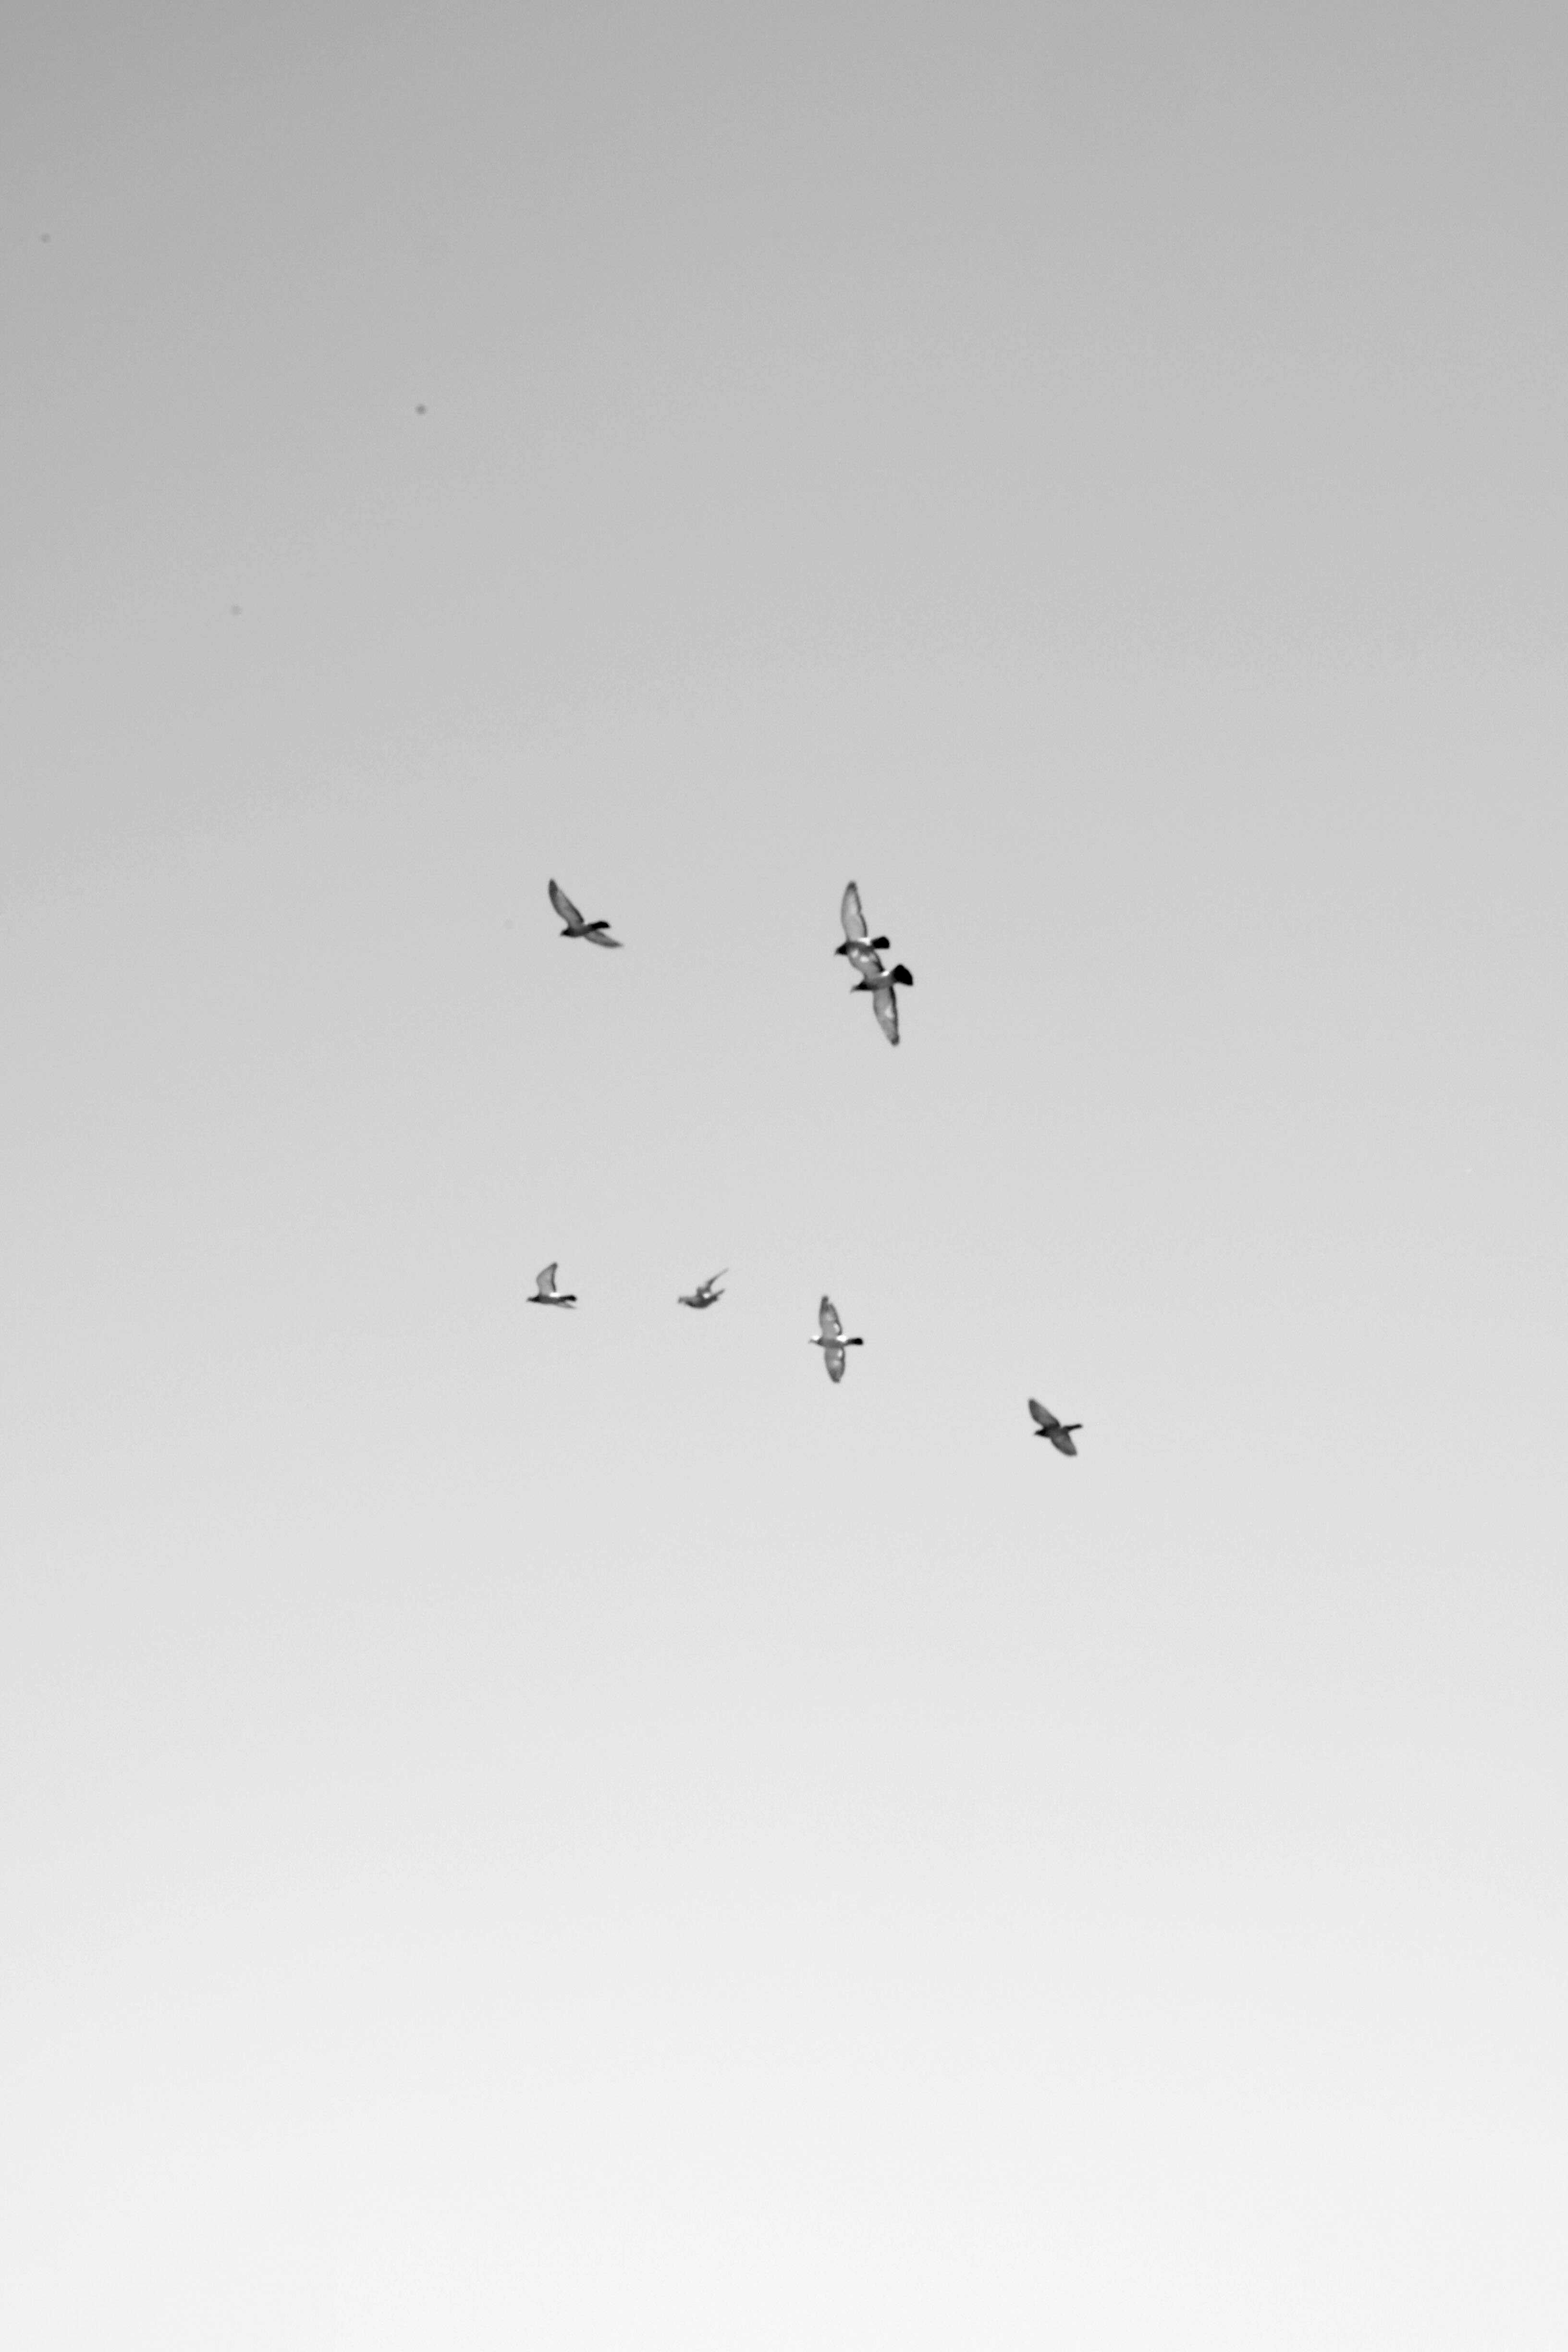 seven white birds flying